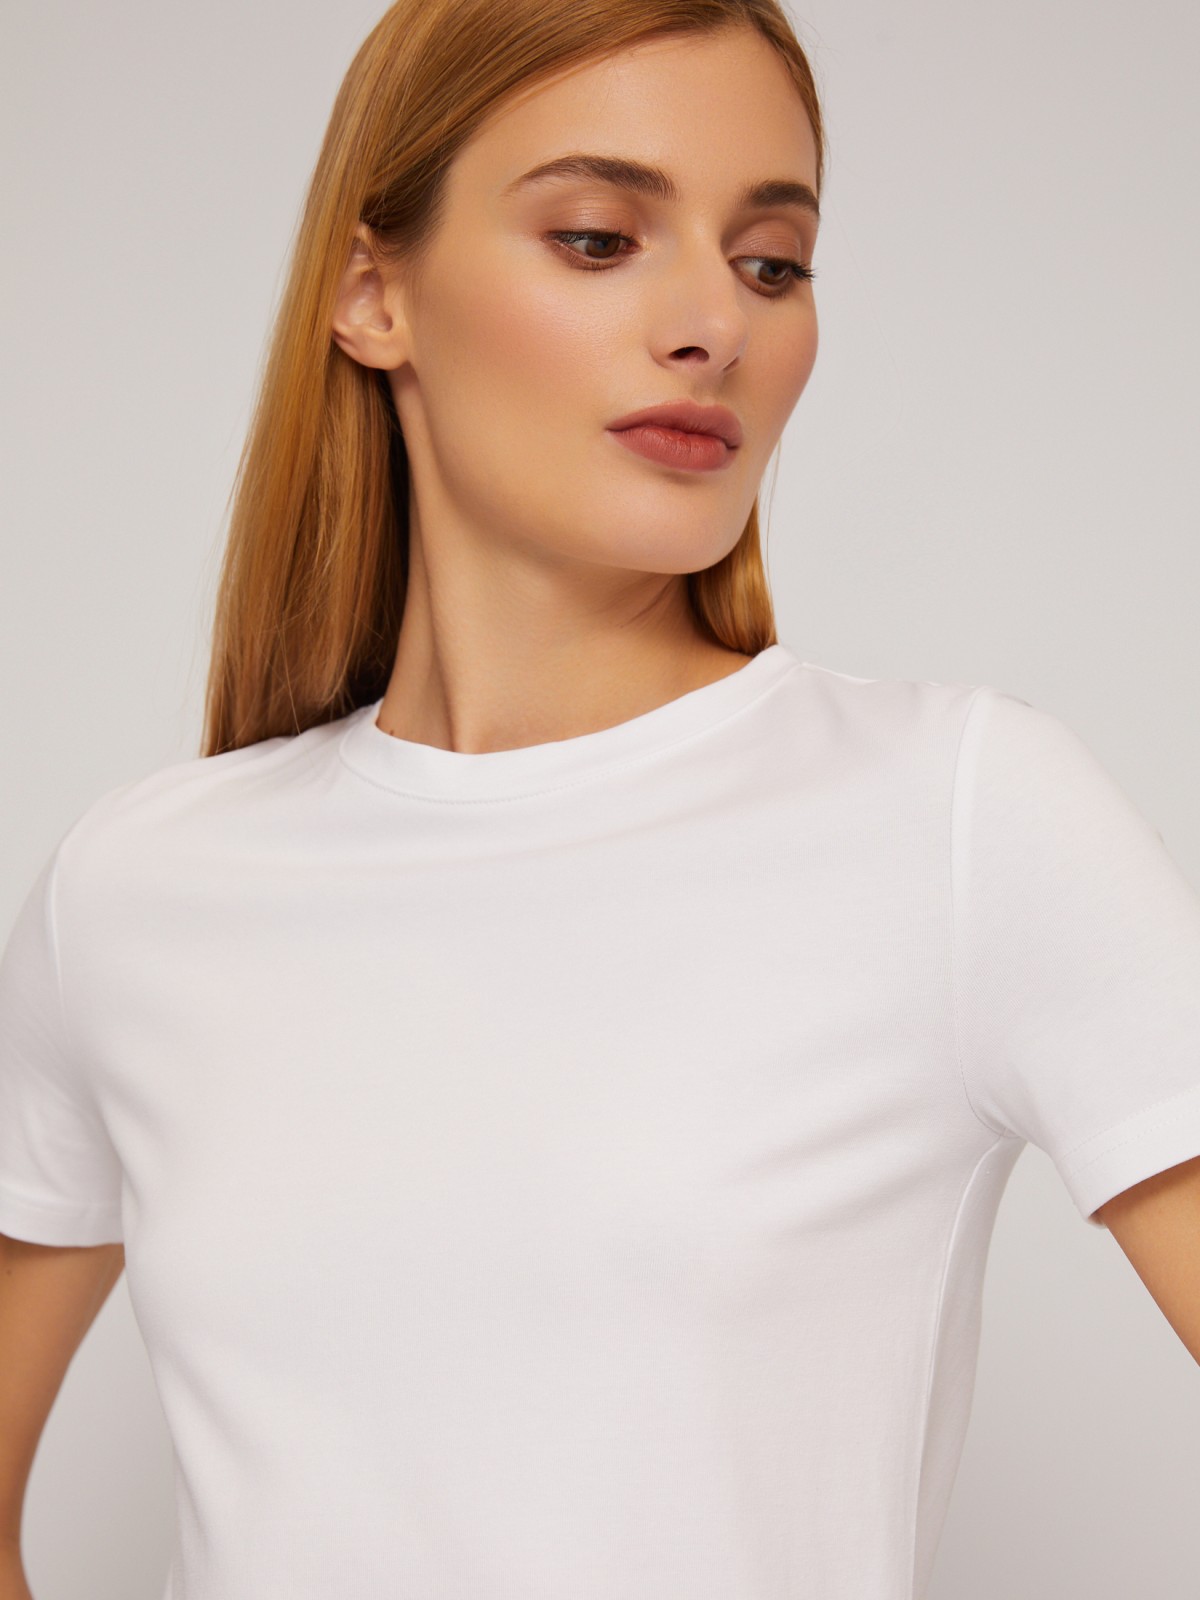 Трикотажный базовая футболка из хлопка без принта zolla 024233264132, цвет белый, размер XS - фото 4